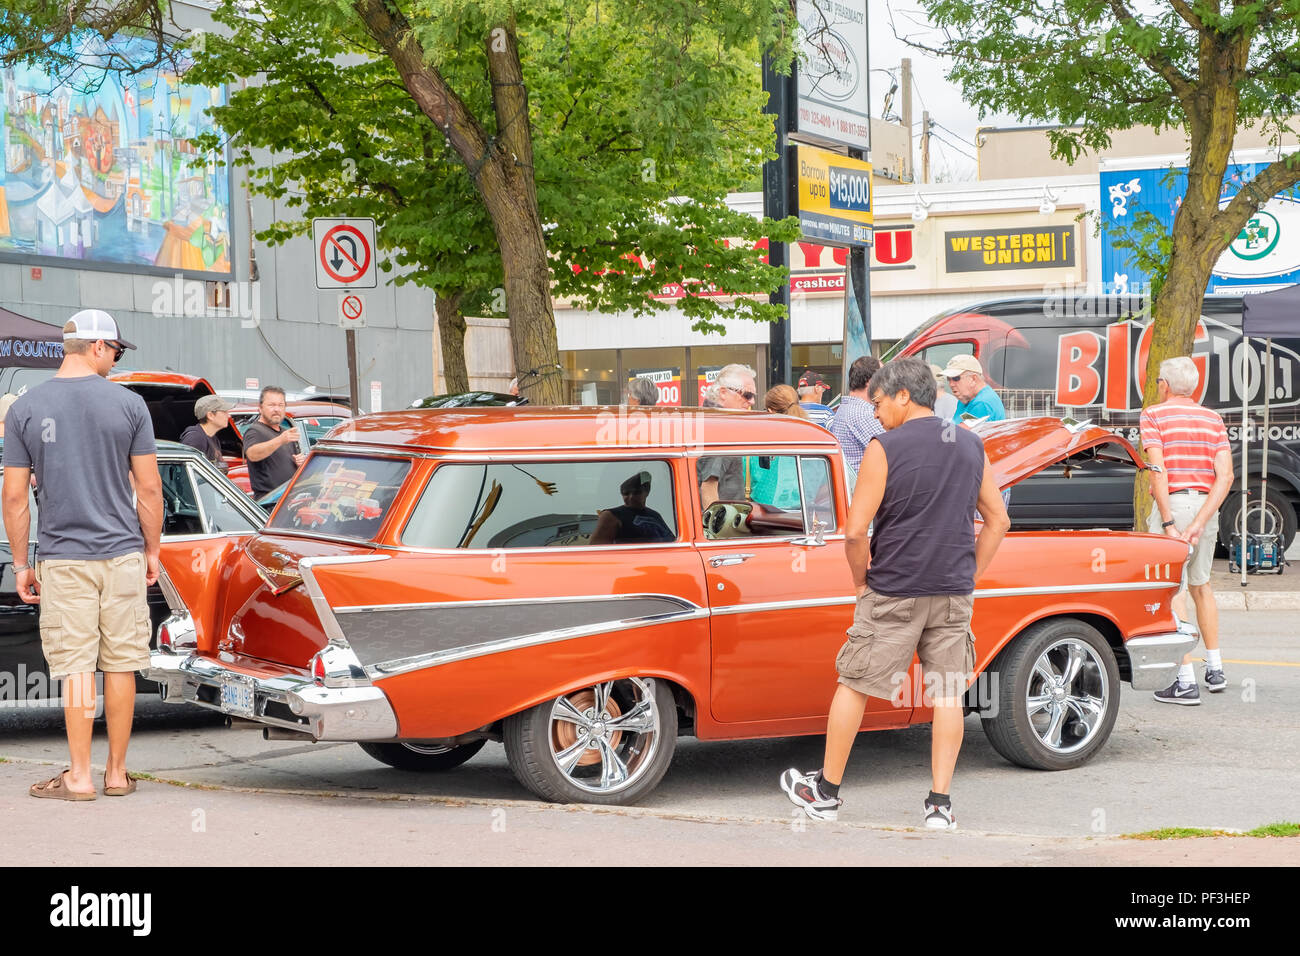 Teilnehmer bewundern Ein 1957 Chevrolet stationwagon am 20. jährlichen Orillia Downtown Classic Car Show, der größte seiner Art in der Region. Stockfoto